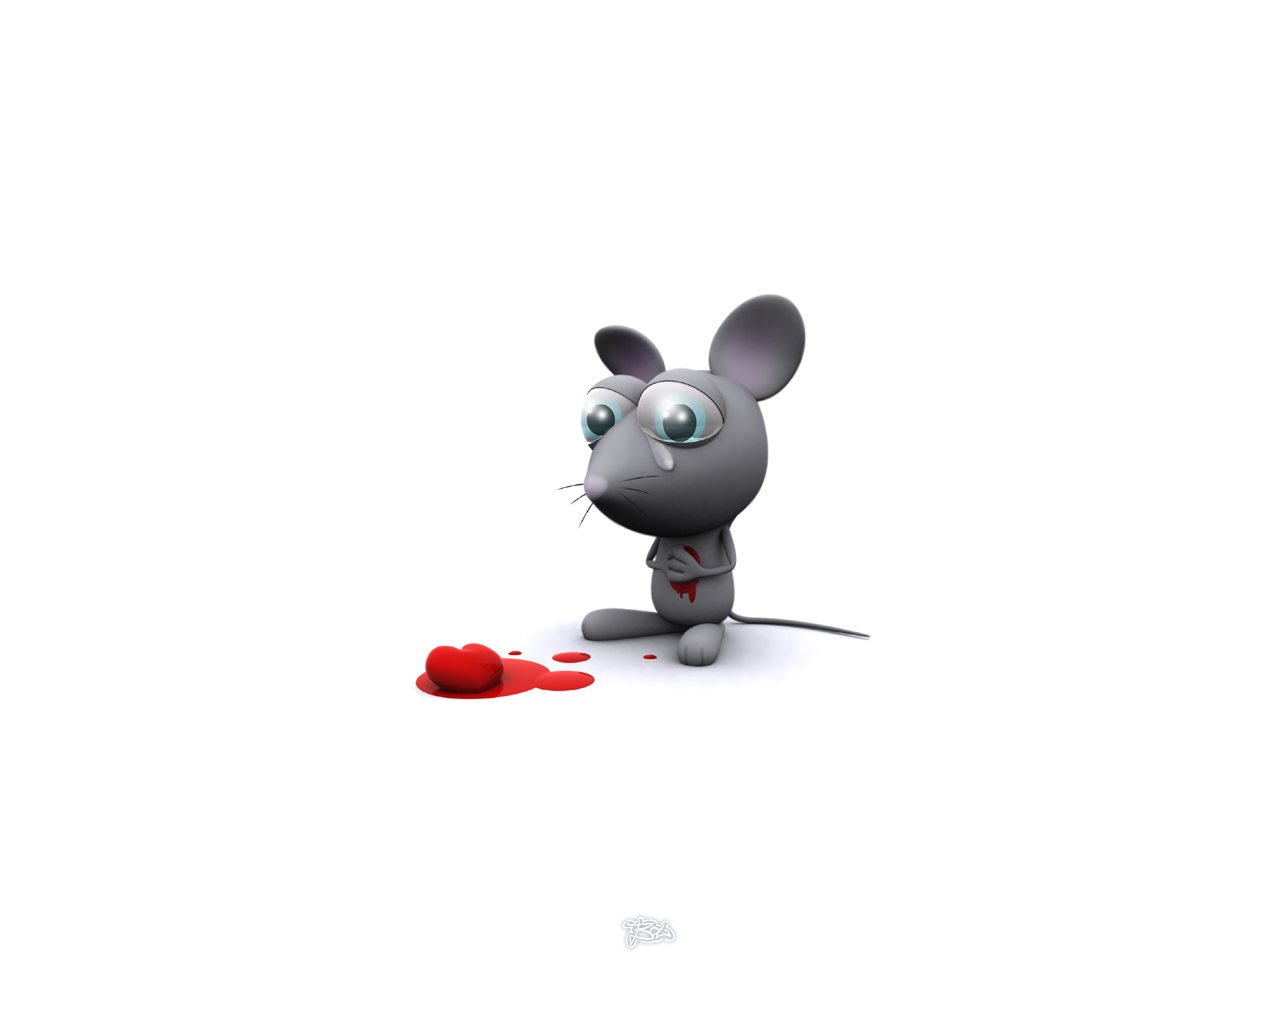 Мышки плачу. Плачущая мышка. Грустная мышь. Обидели мышку. Грустный мышонок.